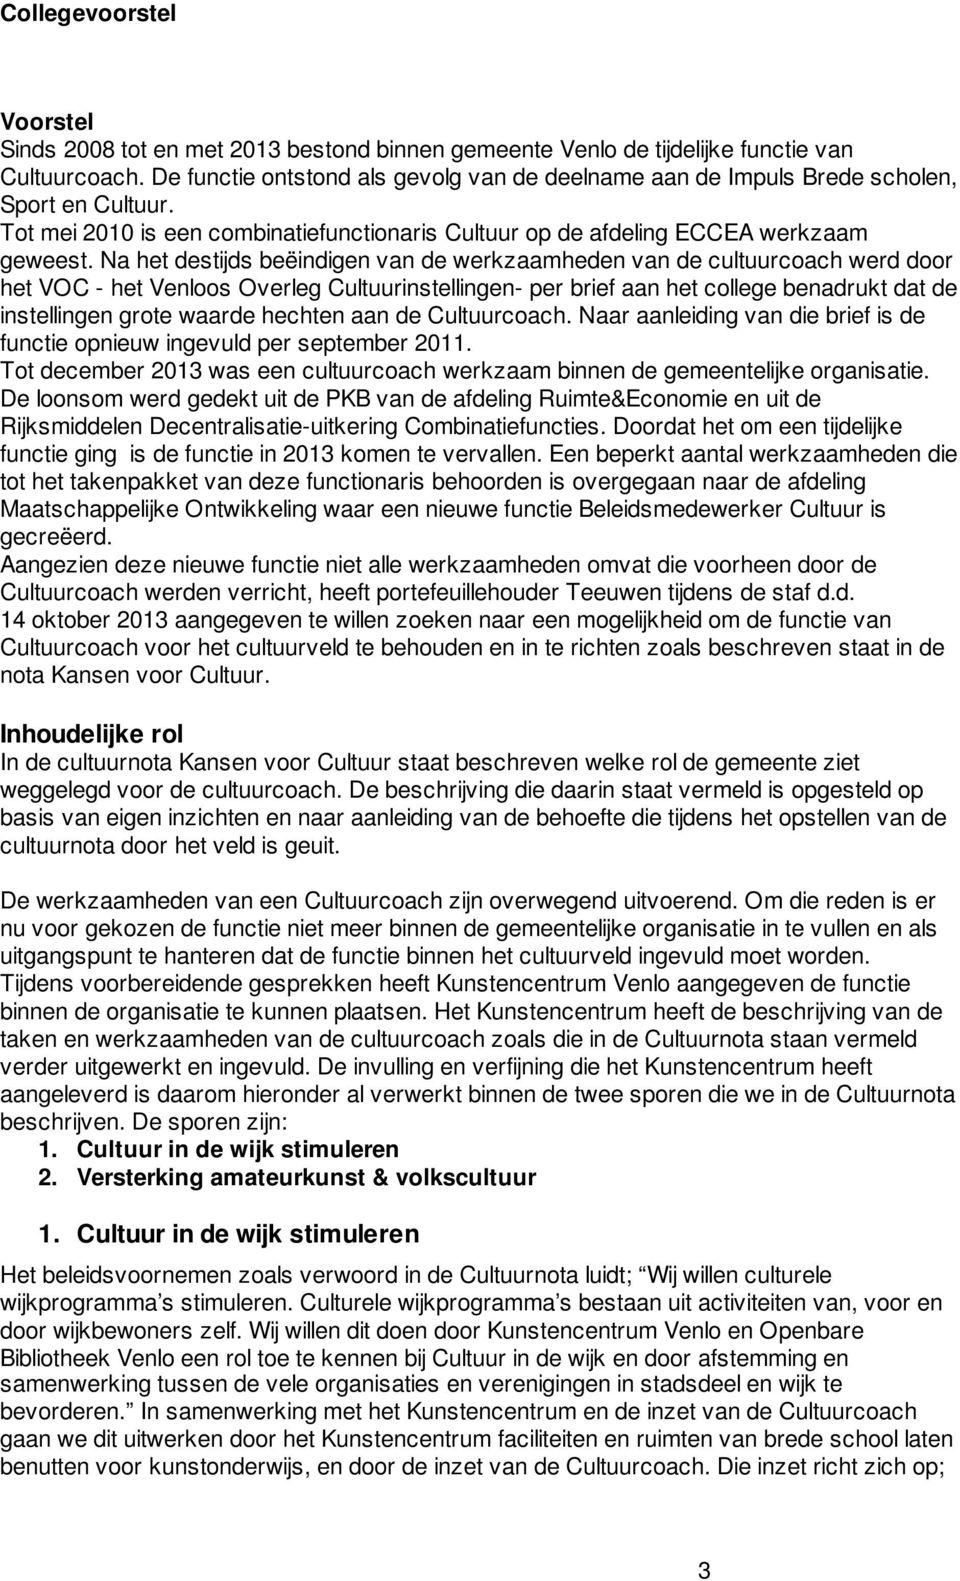 Na het destijds beëindigen van de werkzaamheden van de cultuurcoach werd door het VOC - het Venloos Overleg Cultuurinstellingen- per brief aan het college benadrukt dat de instellingen grote waarde